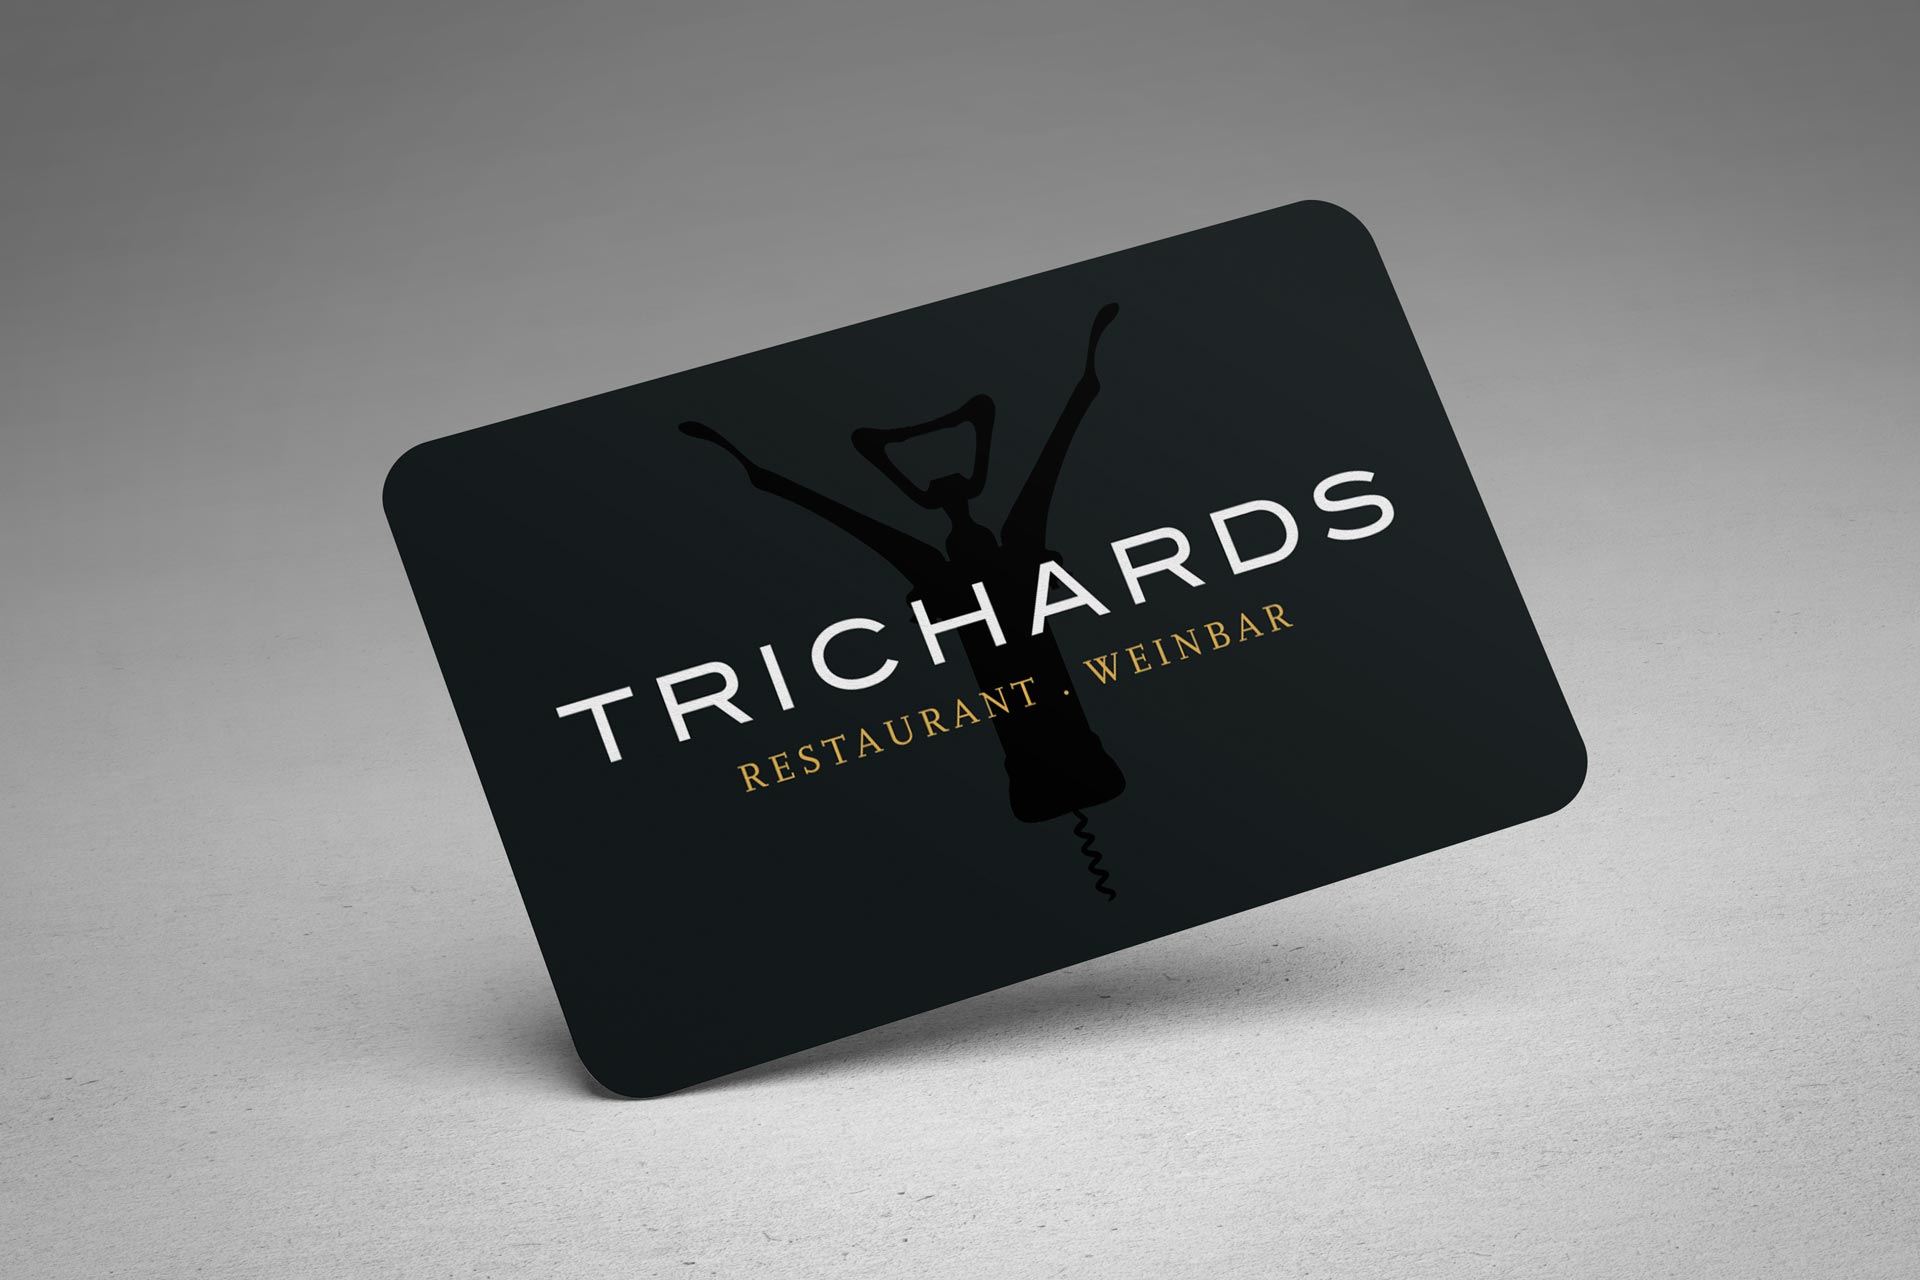 Trichards Weinbar und Restaurant